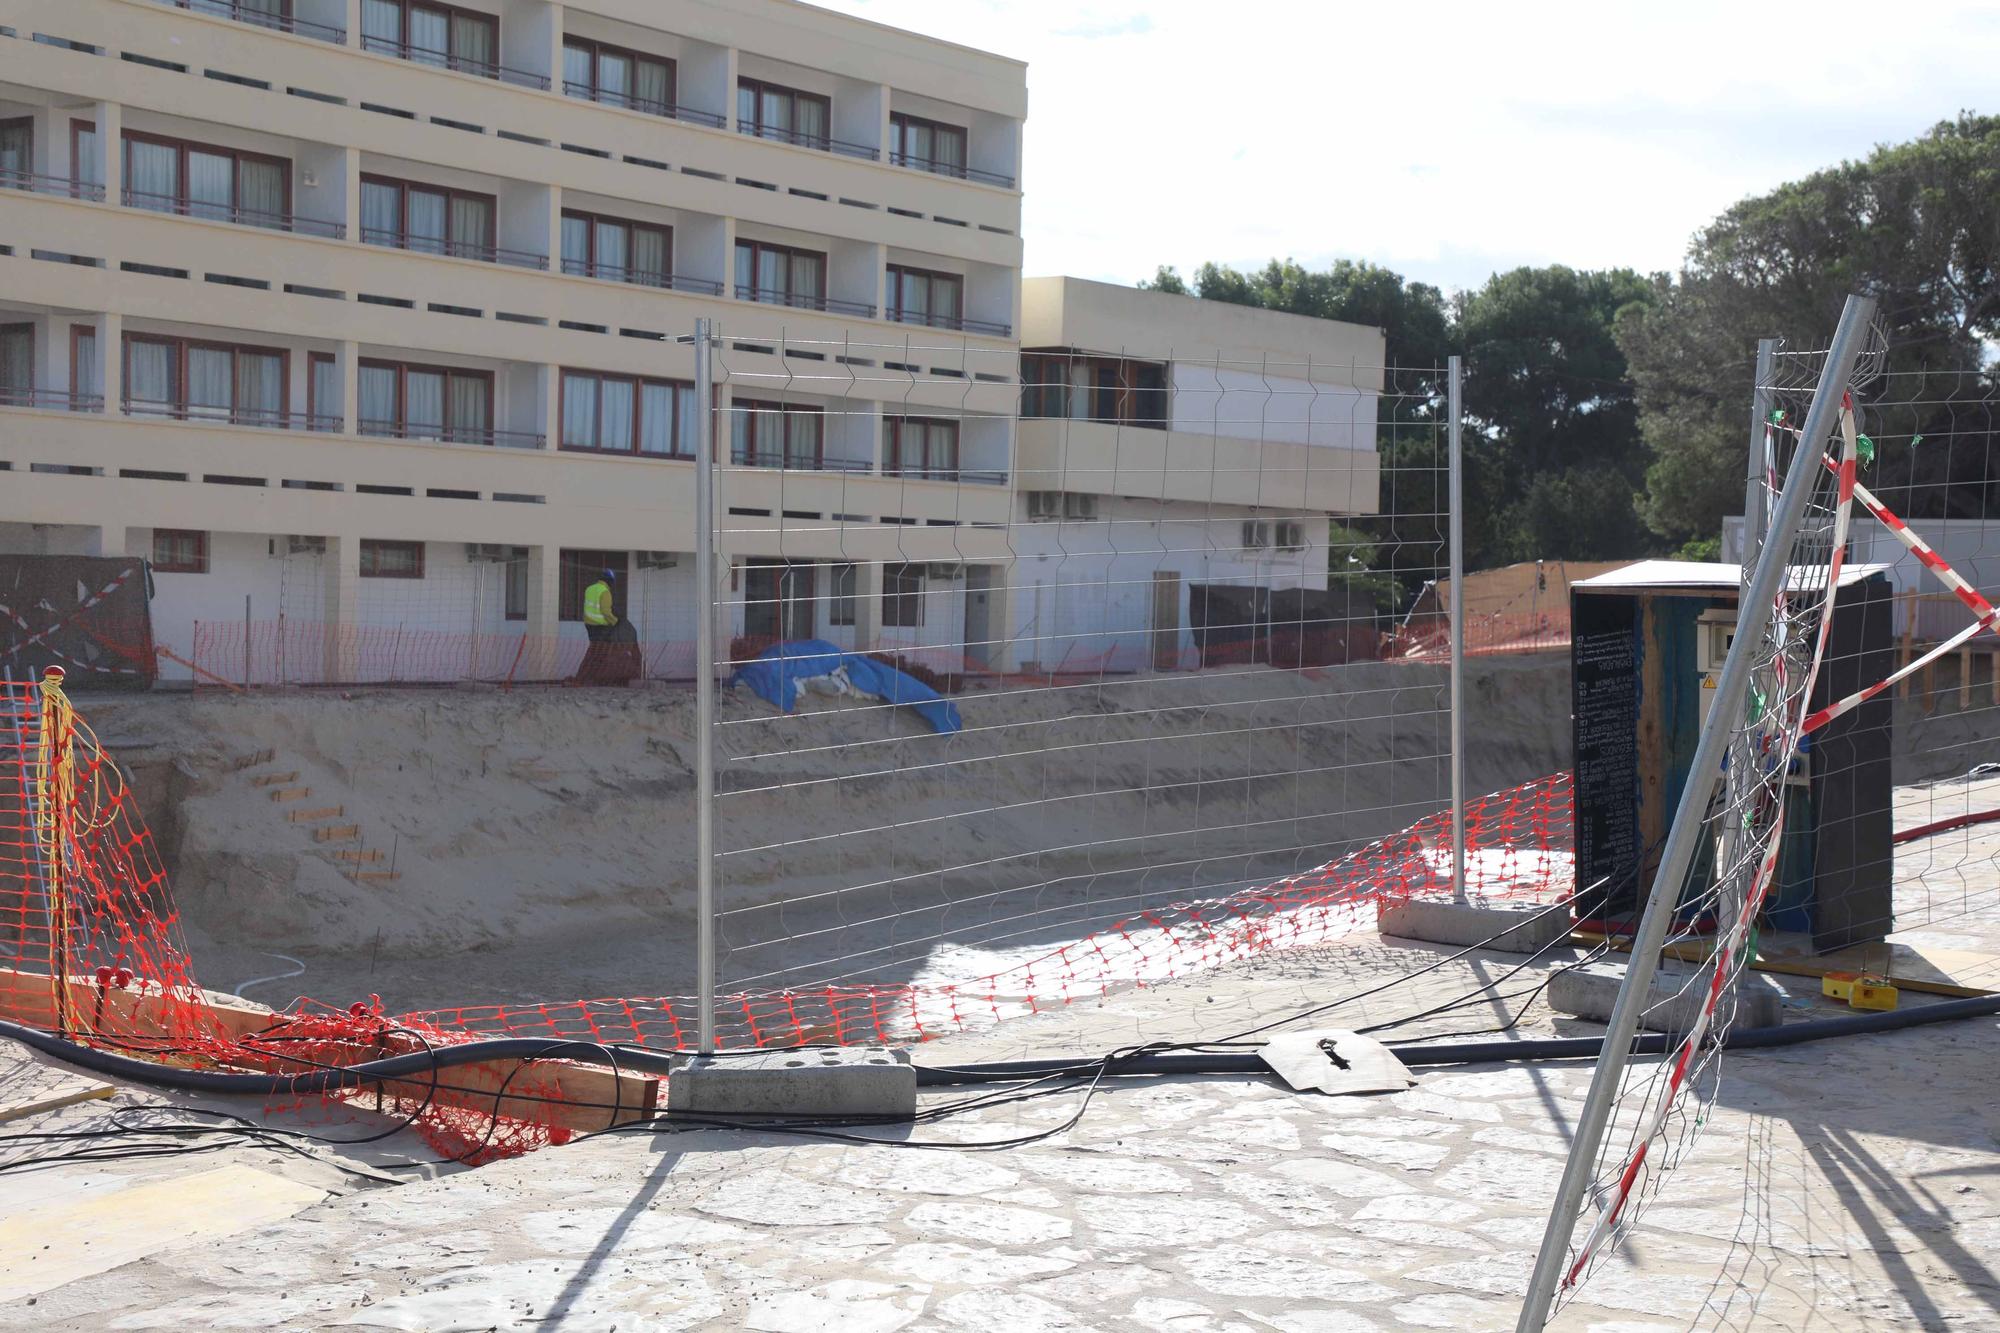 Paralizada la obra de un hotel de lujo en Formentera por incumplir las medidas de seguridad